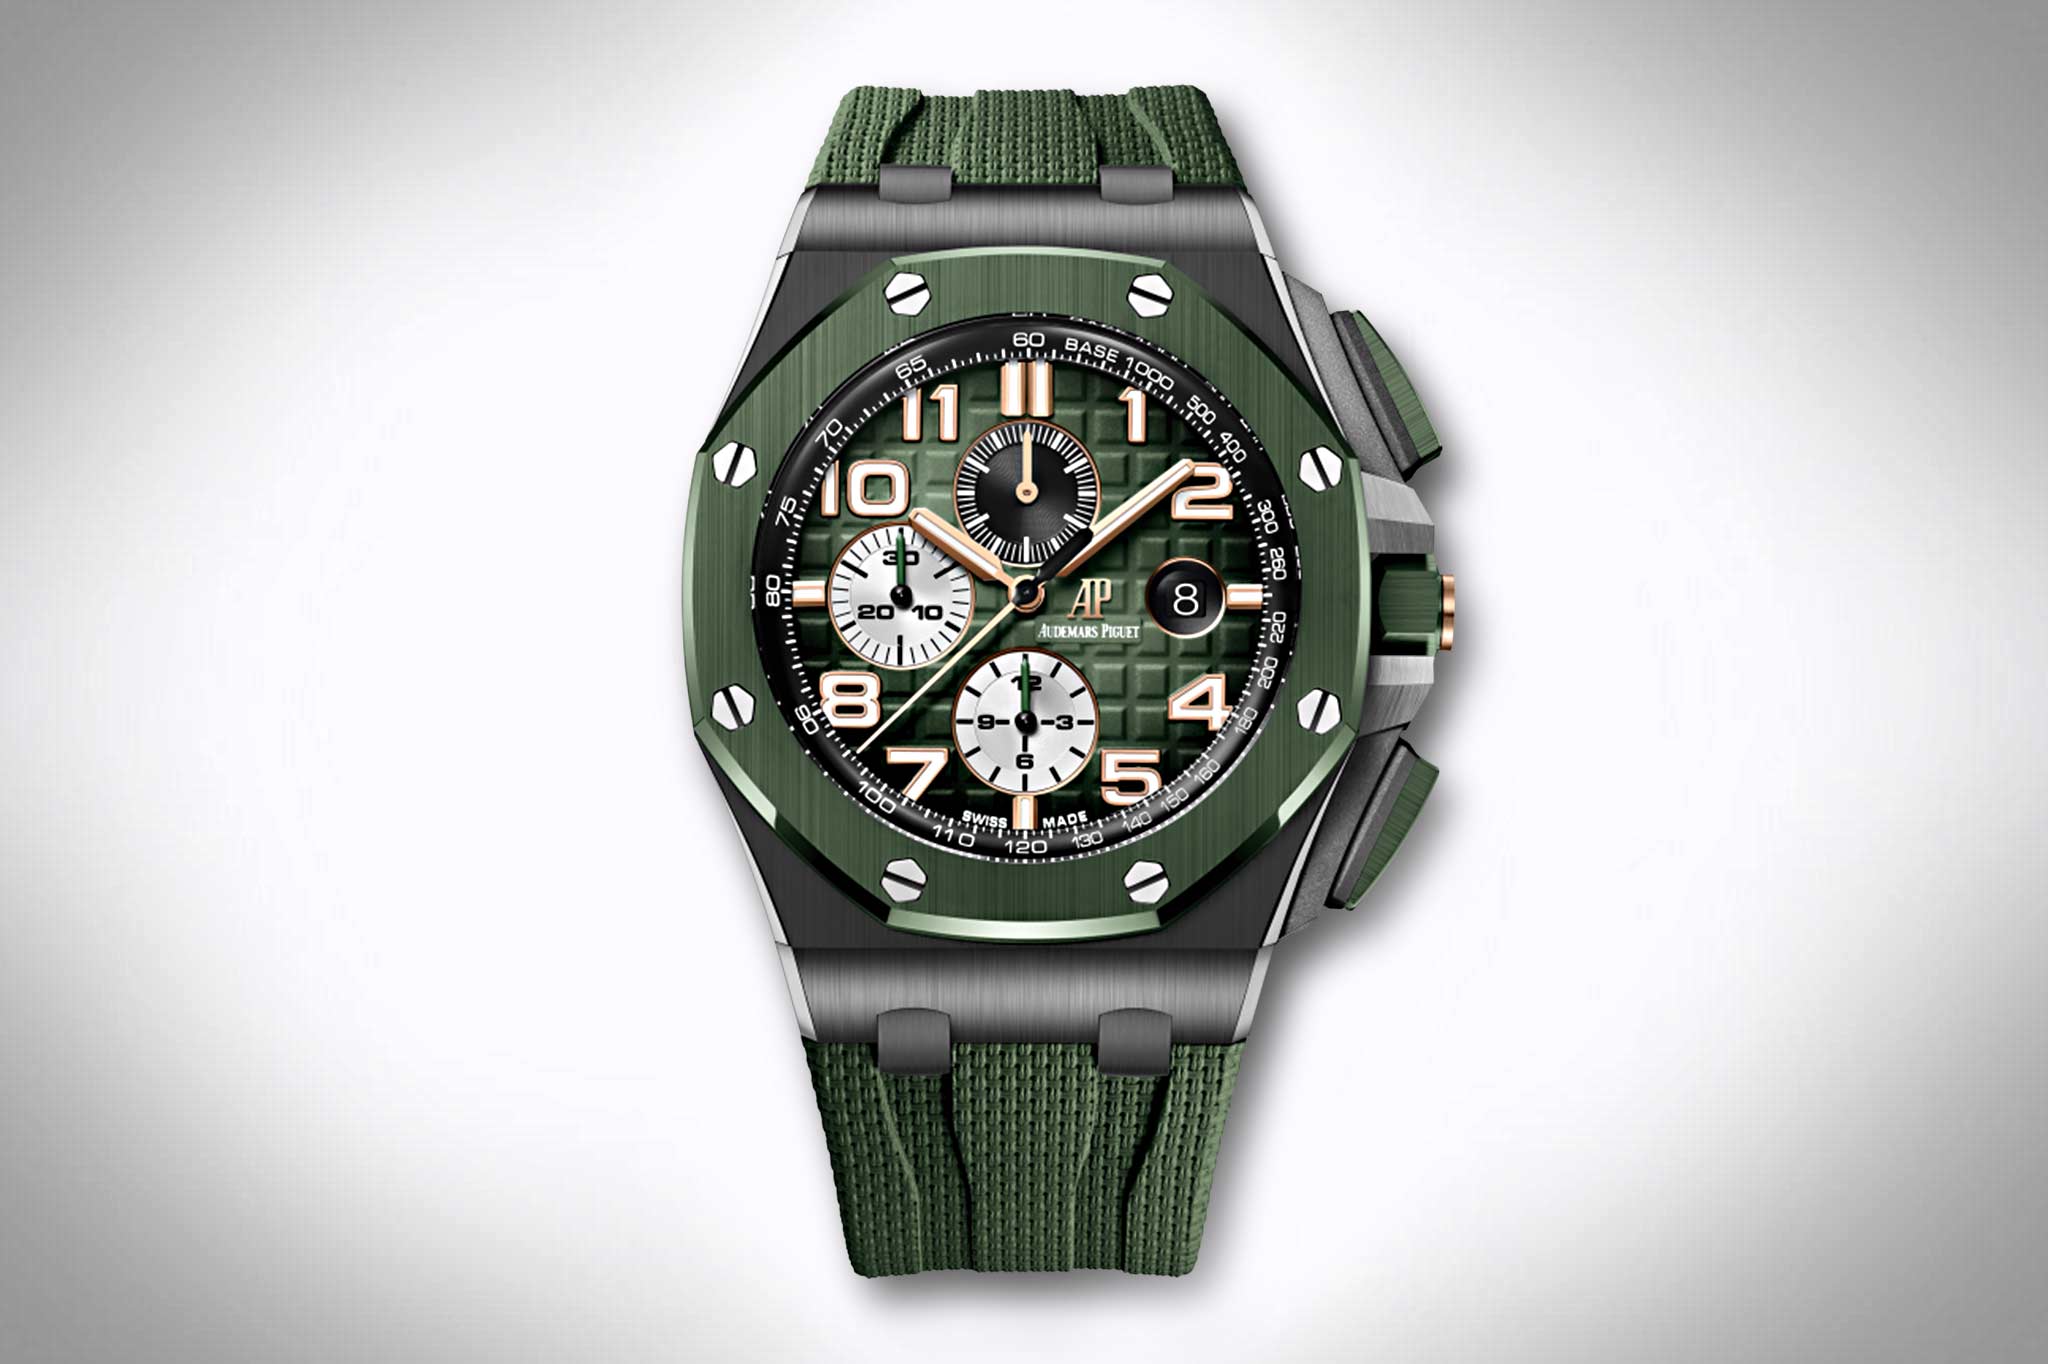 Uhr grünes zifferblatt - Die hochwertigsten Uhr grünes zifferblatt ausführlich verglichen